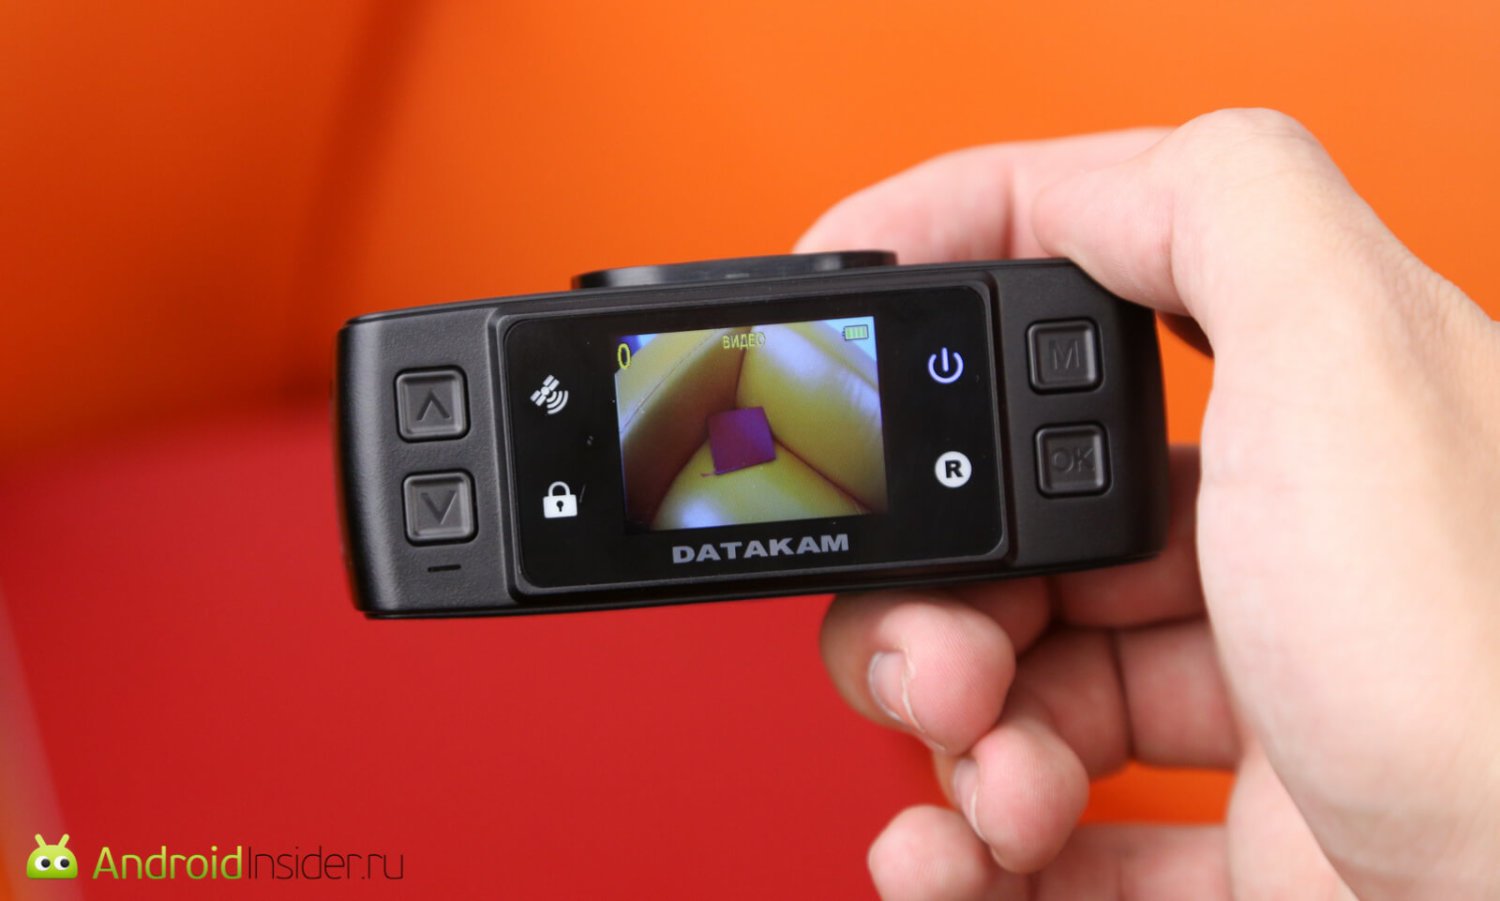 Автомобильный видеорегистратор Datakam 6: премиальные инновации. Фото.